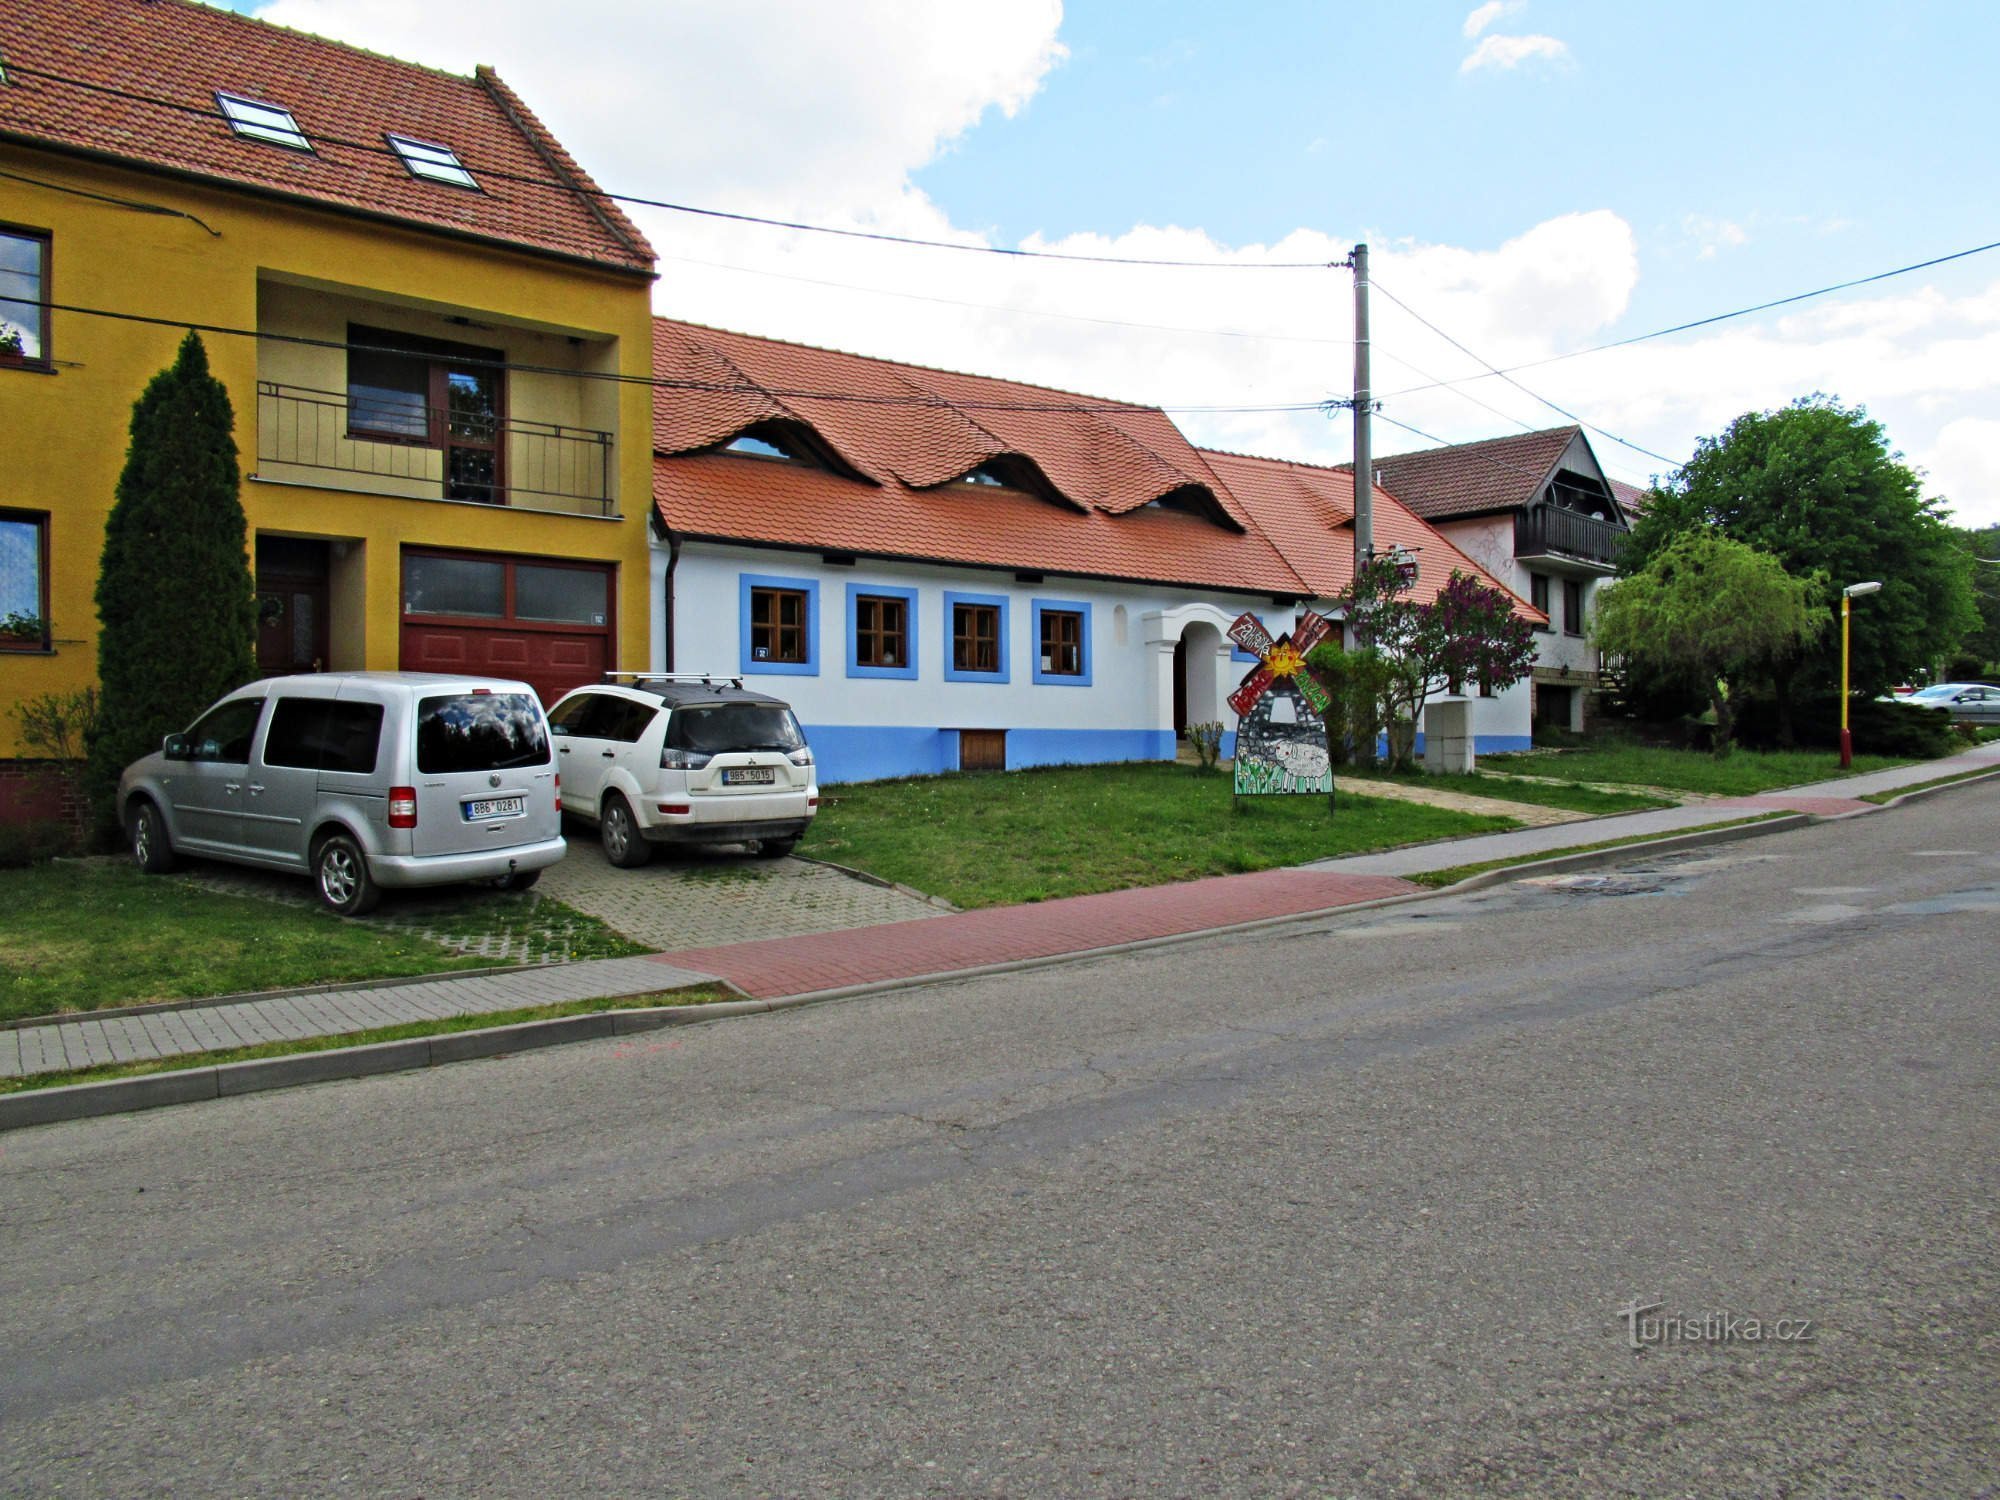 Pension U větrného mlýna dans le village de Kuželov à Slovácko